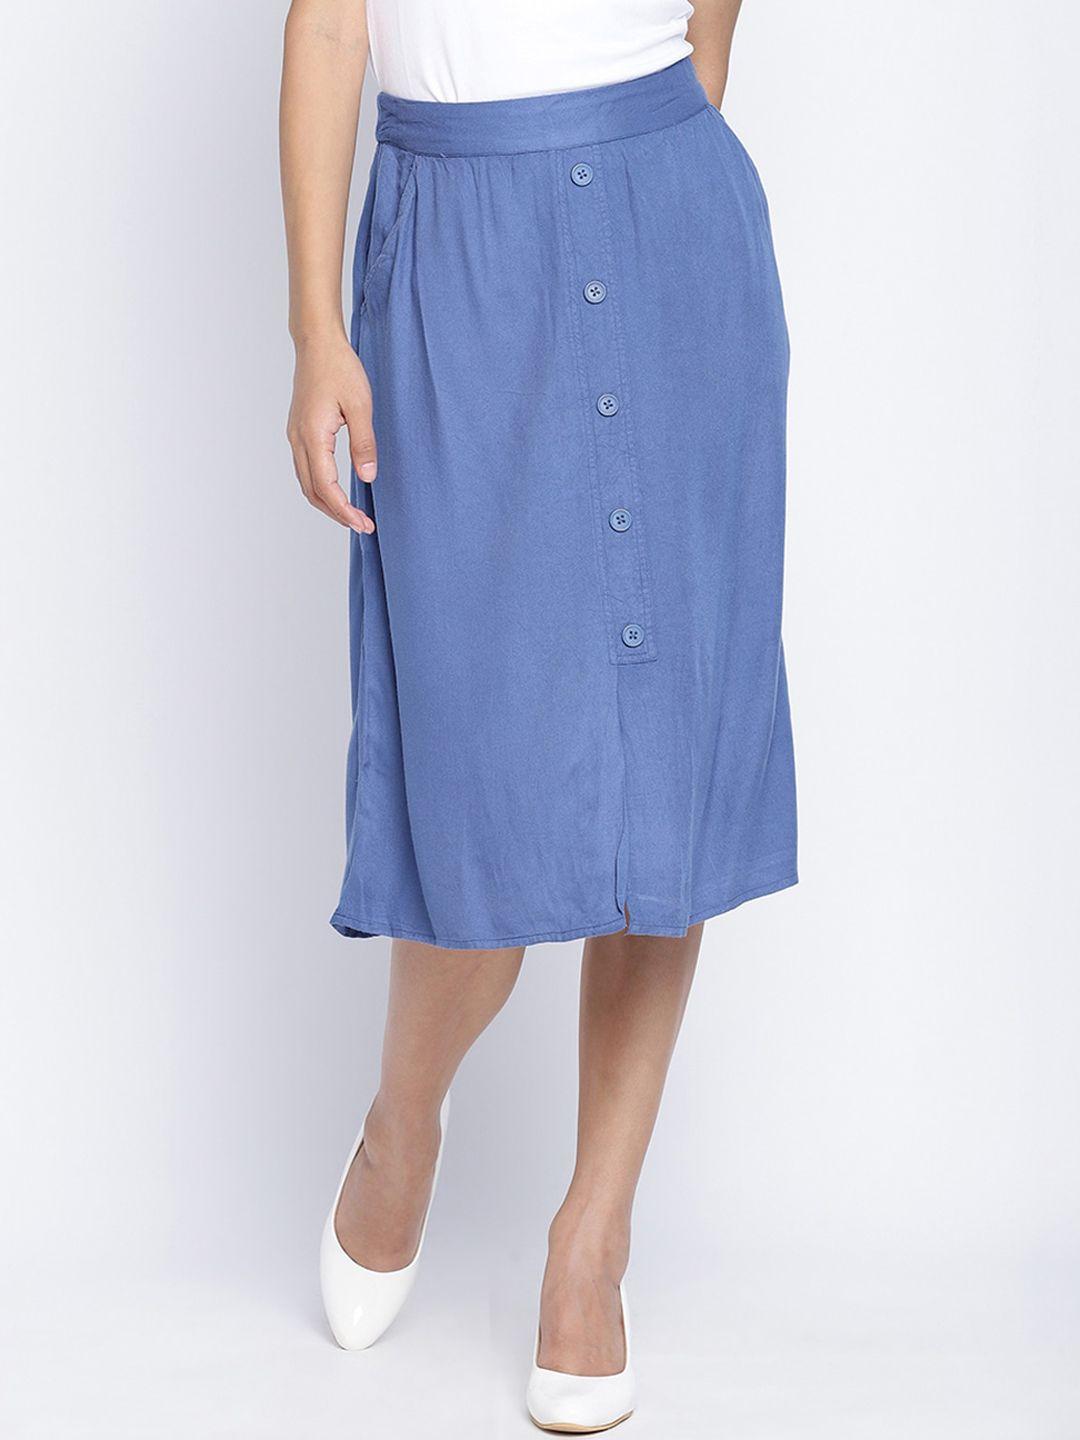 oxolloxo-women-blue-button-down-knee-length-a-line-skirt